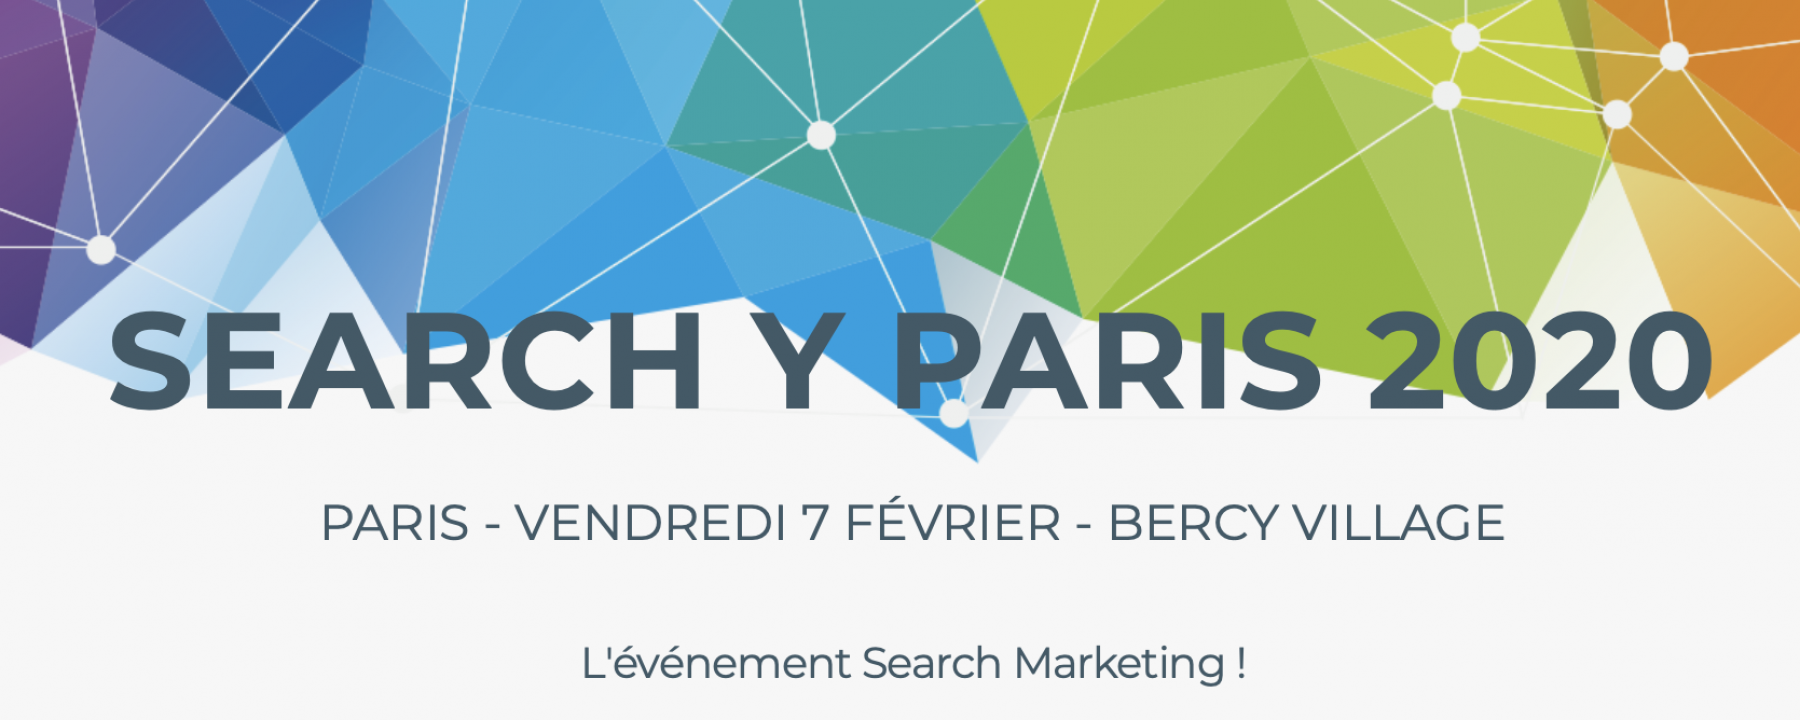 Search Y Paris événement 2020